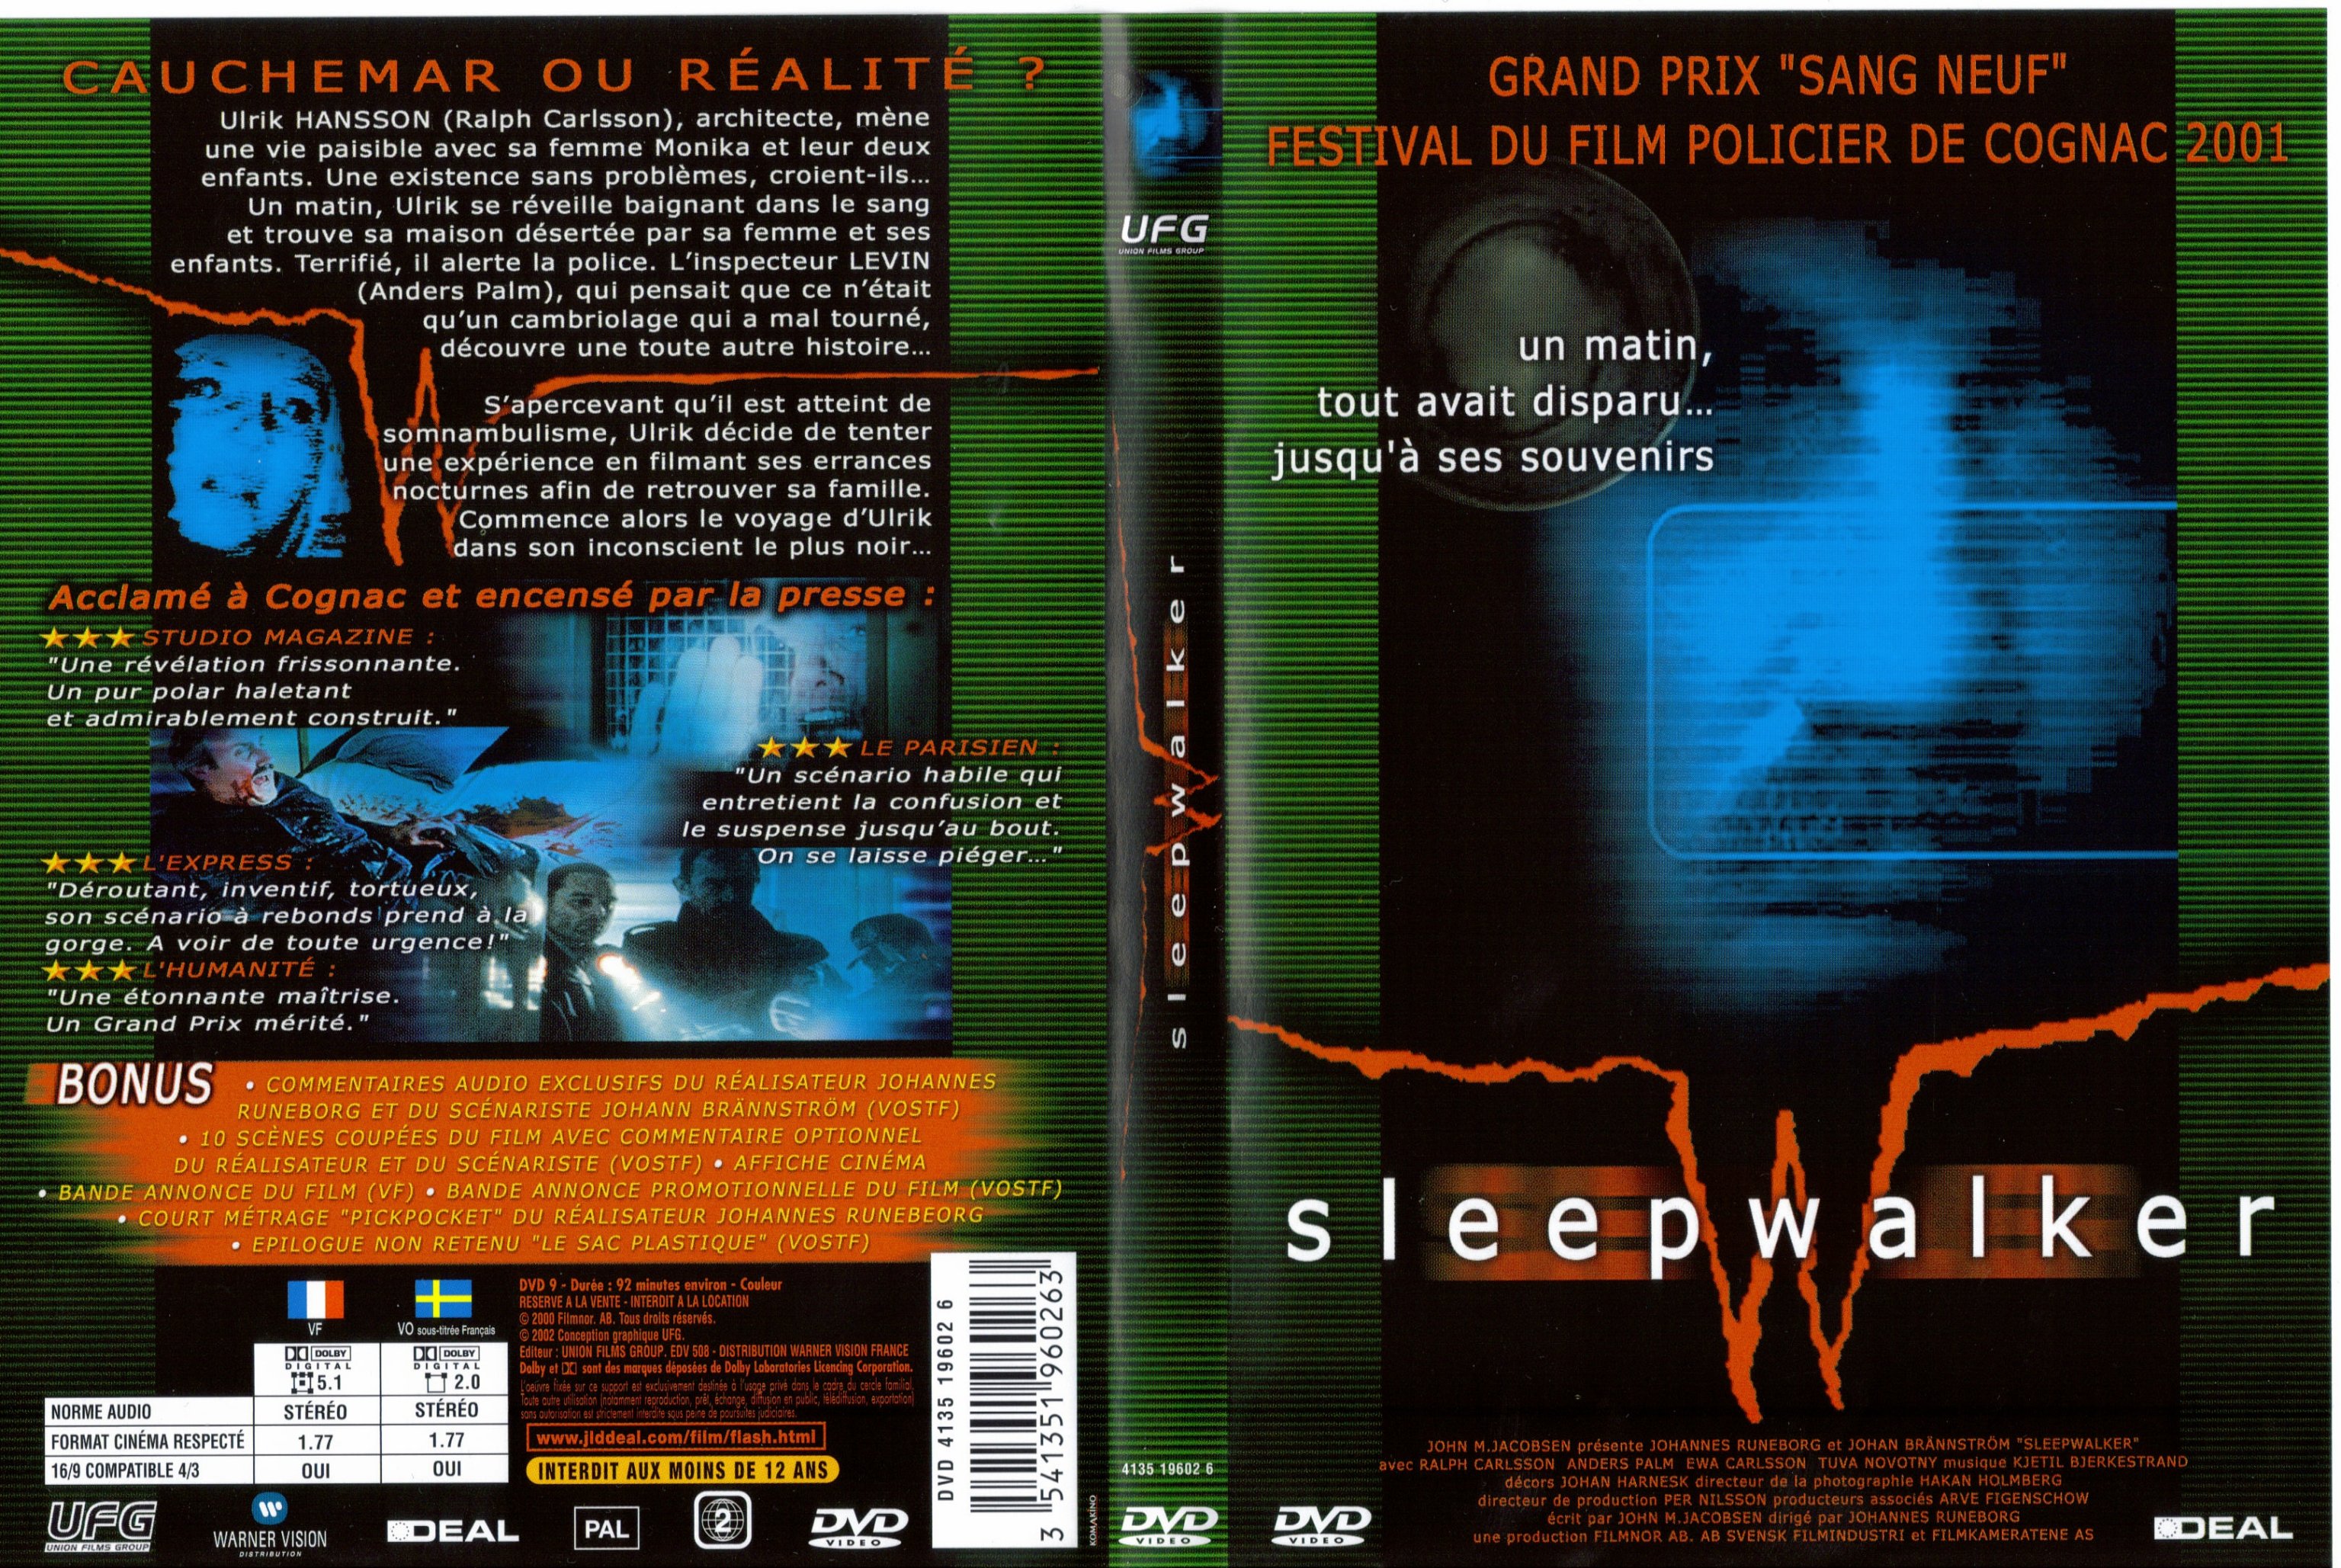 Jaquette DVD Sleepwalker